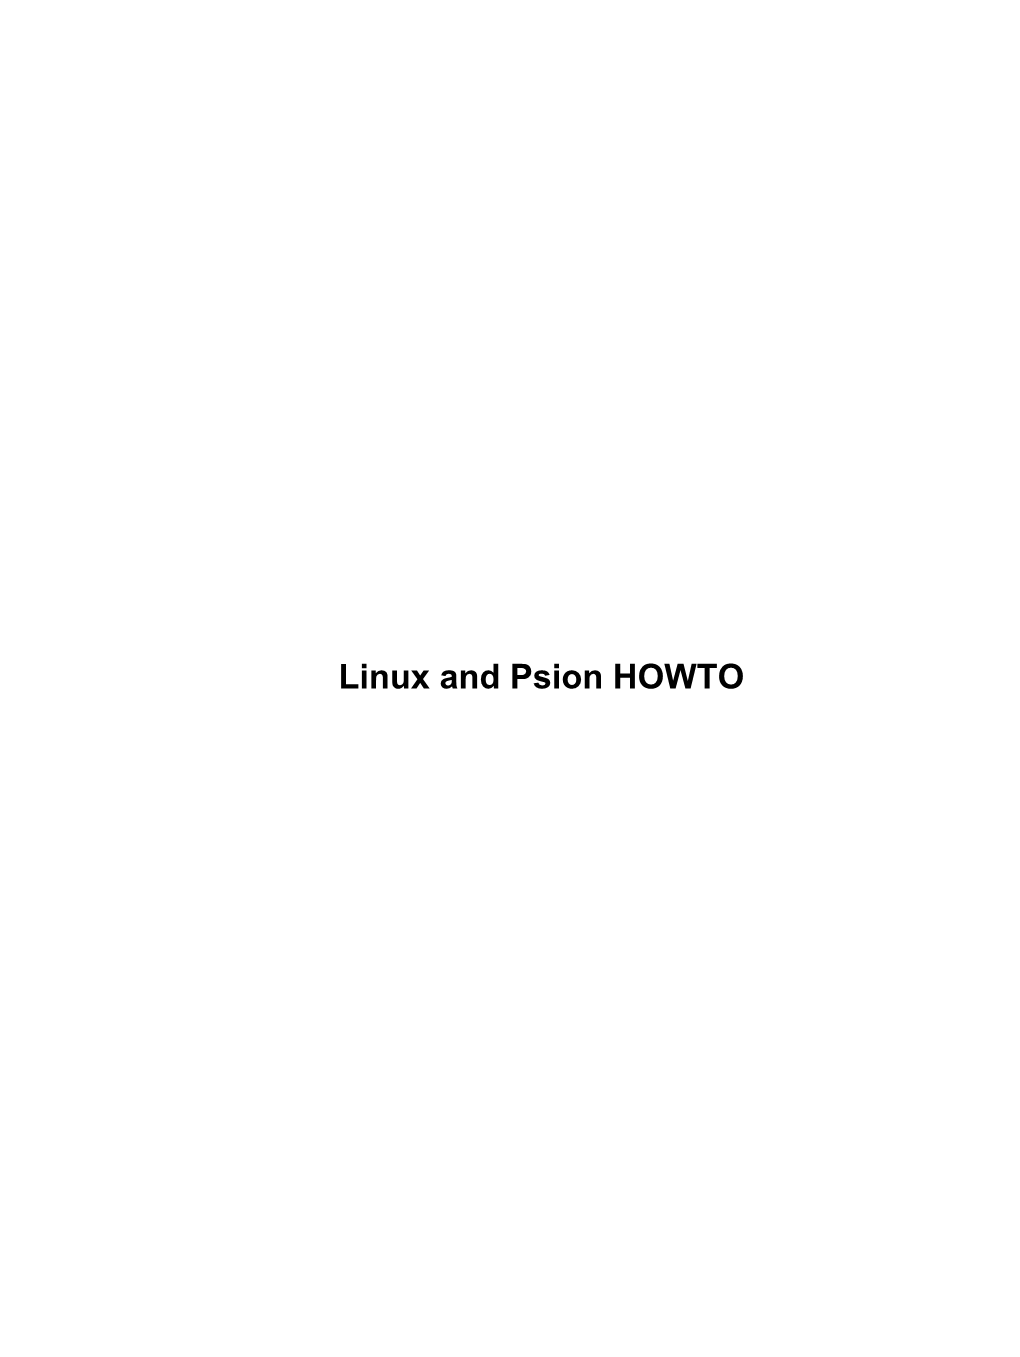 Linux and Psion HOWTO Linux and Psion HOWTO